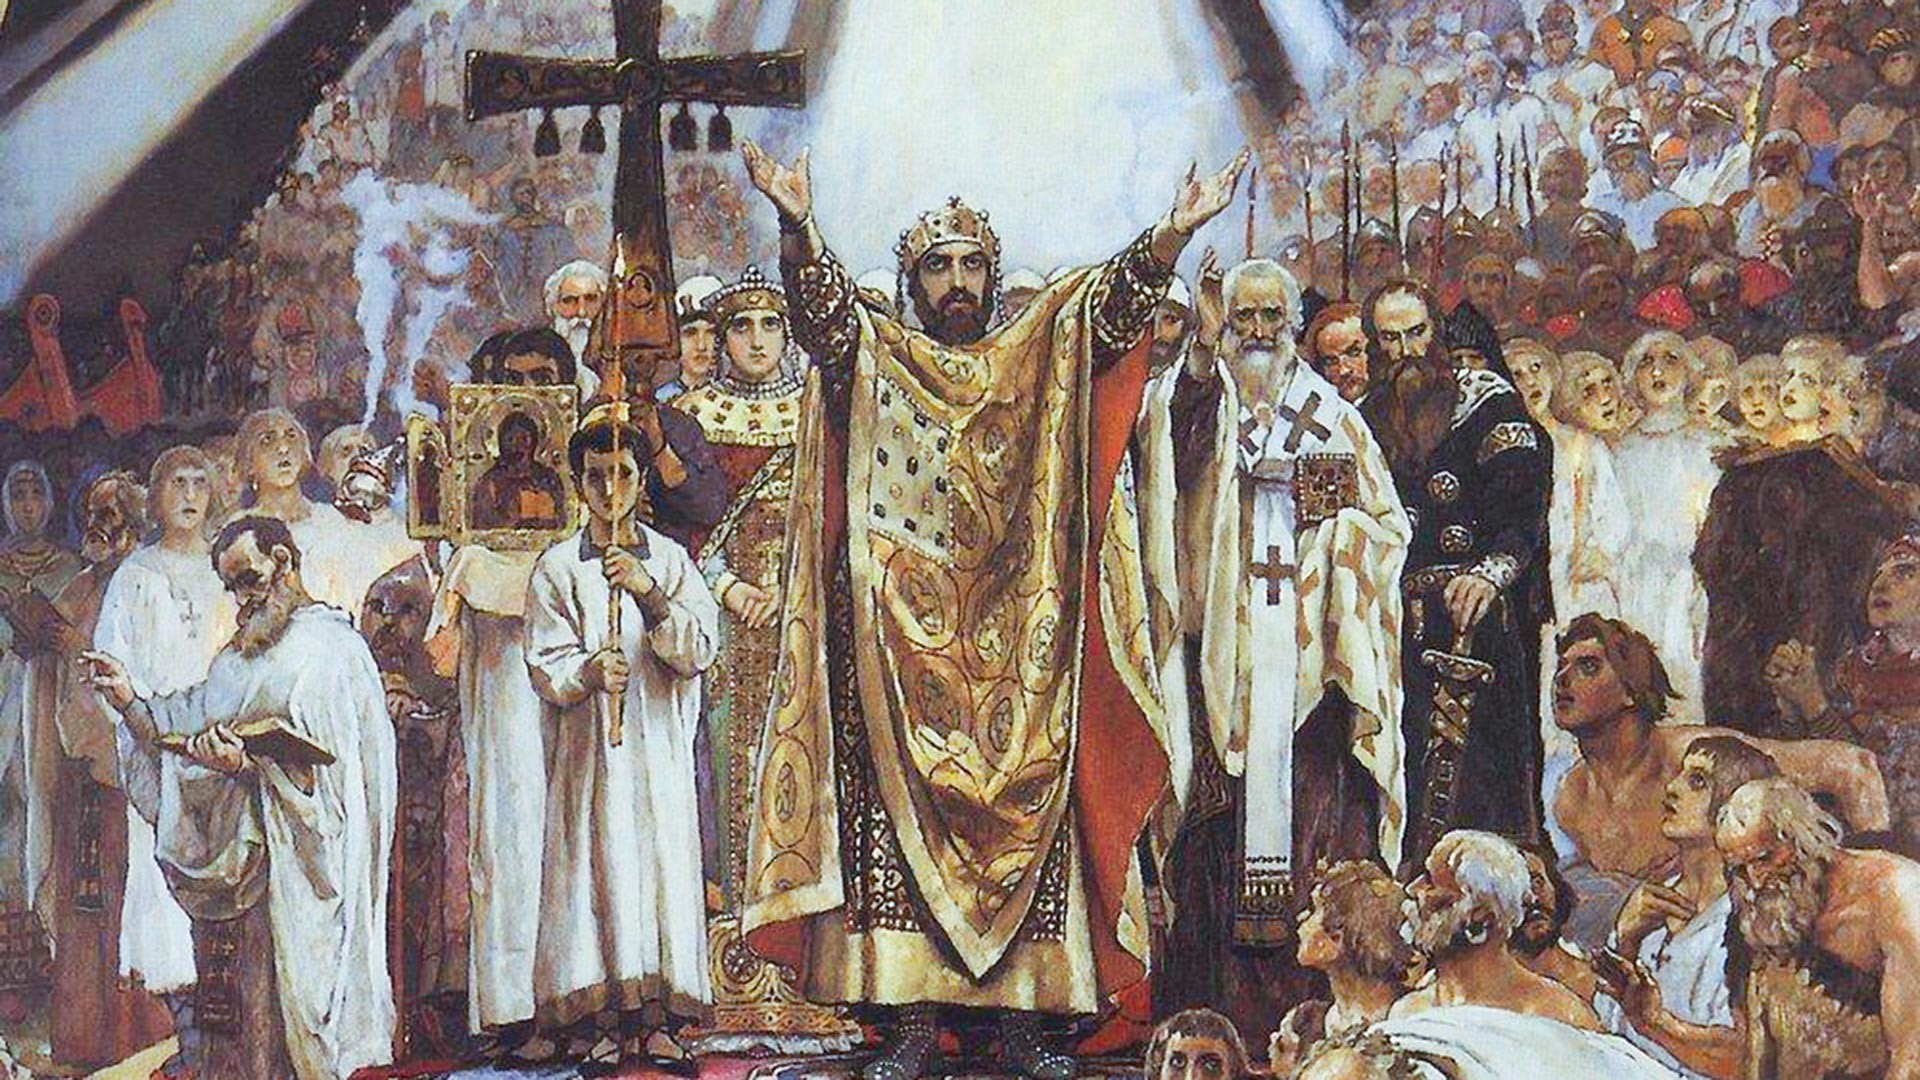 Первый православный князь